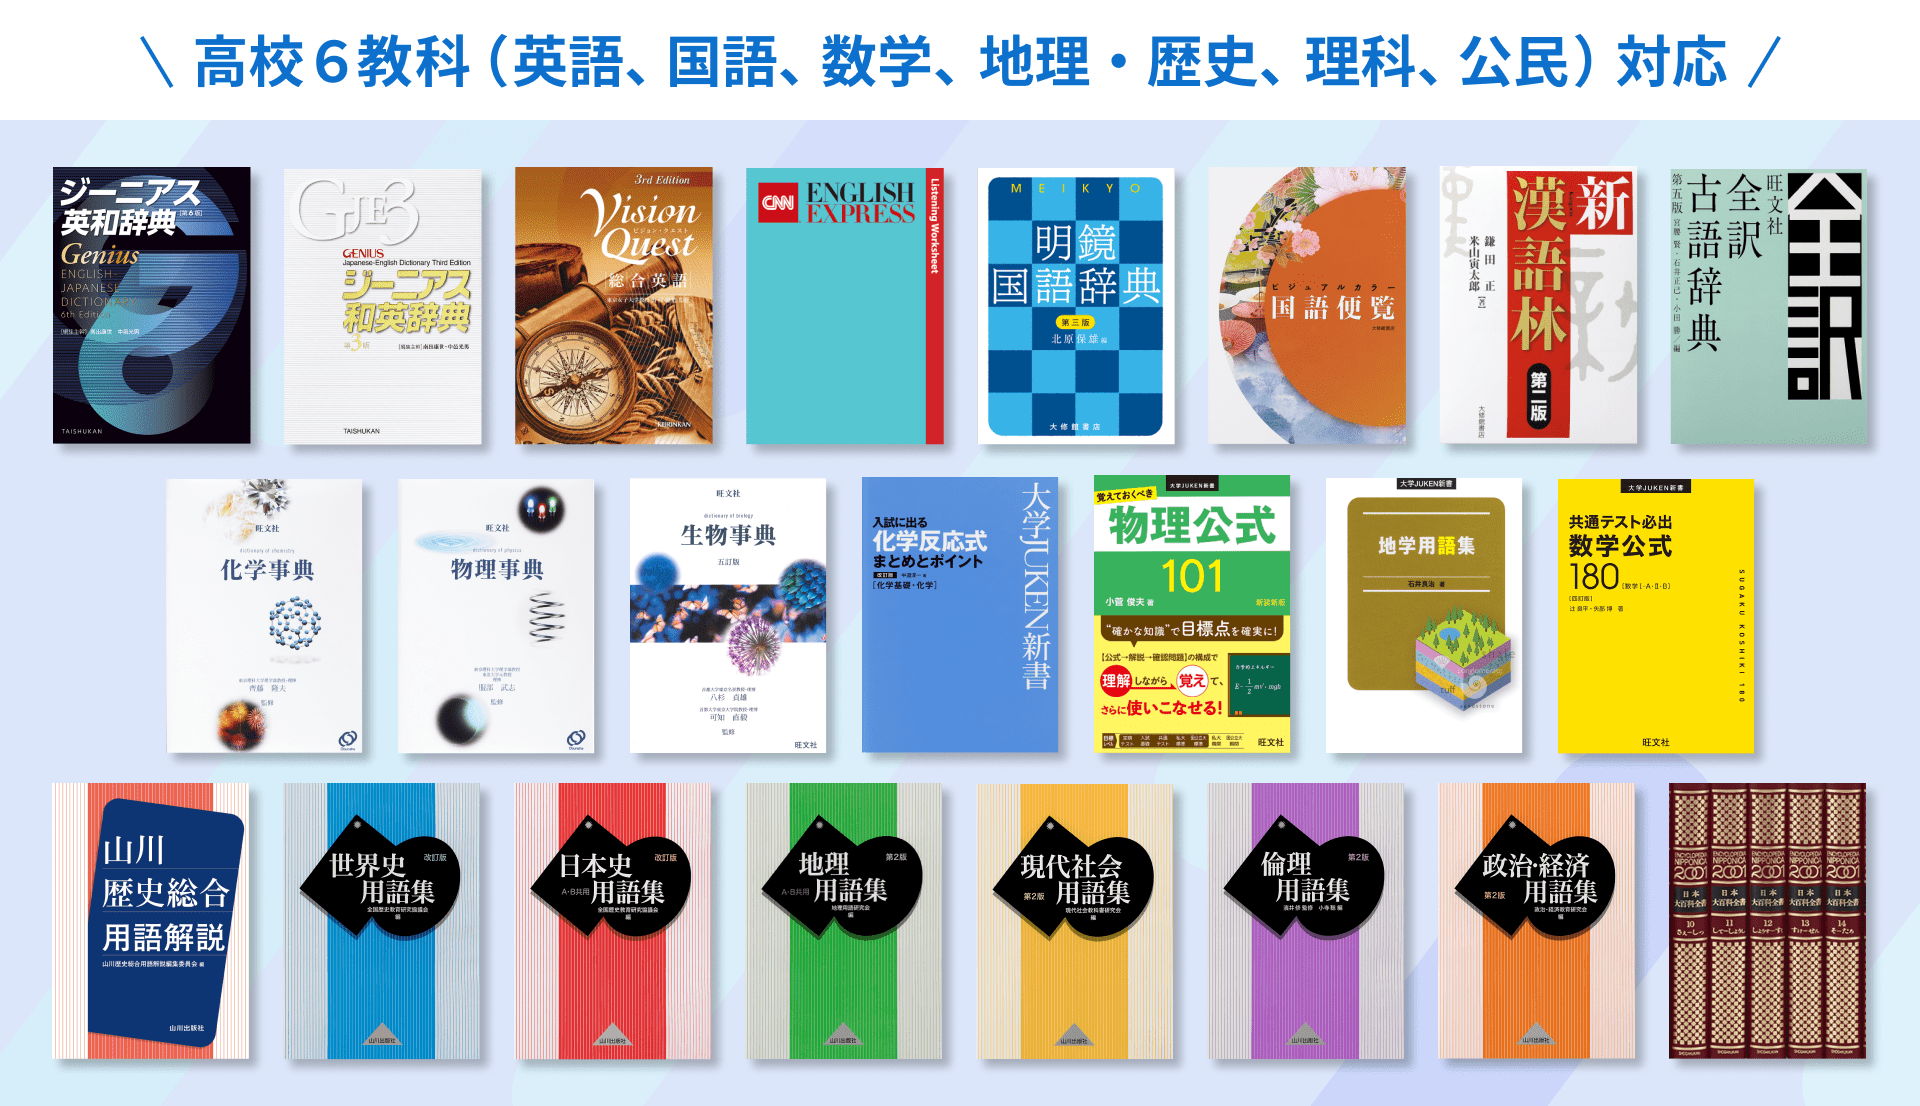 オンライン学習アプリClasspad.net高校生辞書コンテンツ